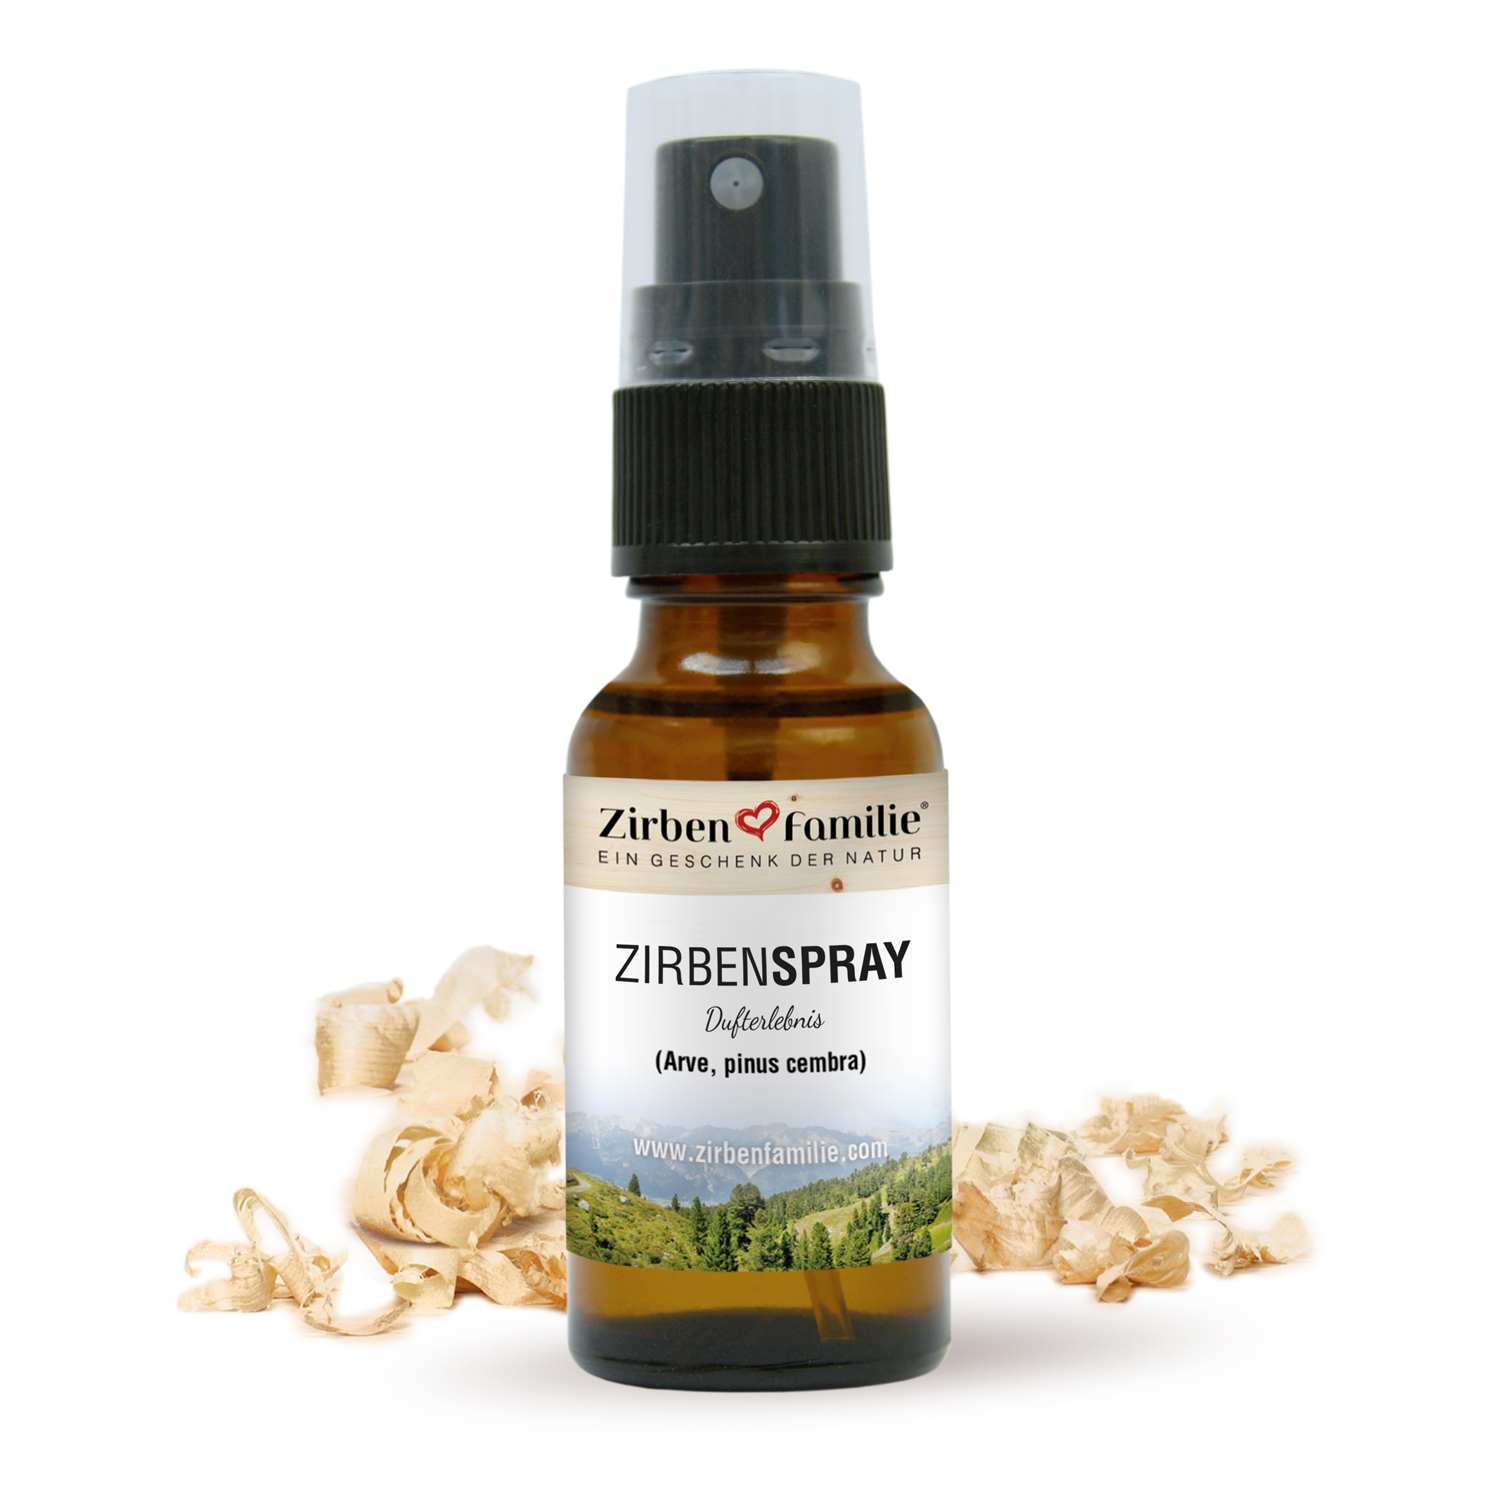 ZirbenFamilie - Zirbenspray